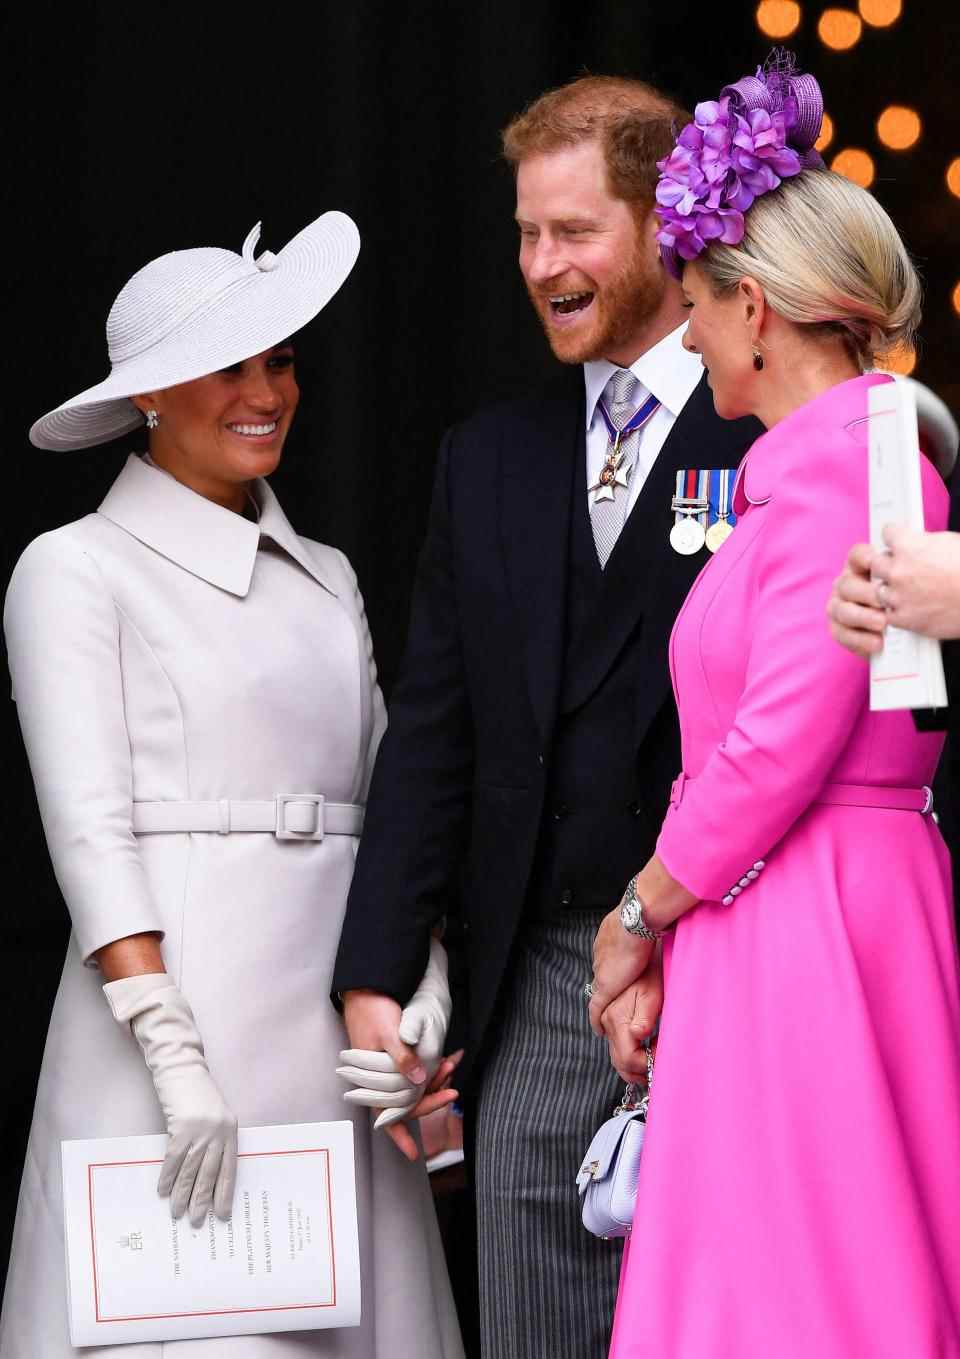 Le prince britannique Harry (C) et son épouse Meghan, le duc et la duchesse de Sussex, s'adressent à Zara Tindall (R) à la fin du service national d'action de grâces pour le règne de la reine à la cathédrale Saint-Paul de Londres le 3 juin 2022 comme dans le cadre des célébrations du jubilé de platine de la reine Elizabeth II.  - La reine Elizabeth II a lancé le premier des quatre jours de célébrations marquant ses 70 ans record sur le trône, devant des foules de dizaines de milliers de personnes.  Mais l'apparition de la souveraine de 96 ans au jubilé de platine – une étape jamais atteinte auparavant par un monarque britannique – a fait des ravages, la forçant à se retirer d'un service religieux prévu.  (Photo de TOBY MELVILLE / POOL / AFP) (Photo de TOBY MELVILLE/POOL/AFP via Getty Images)